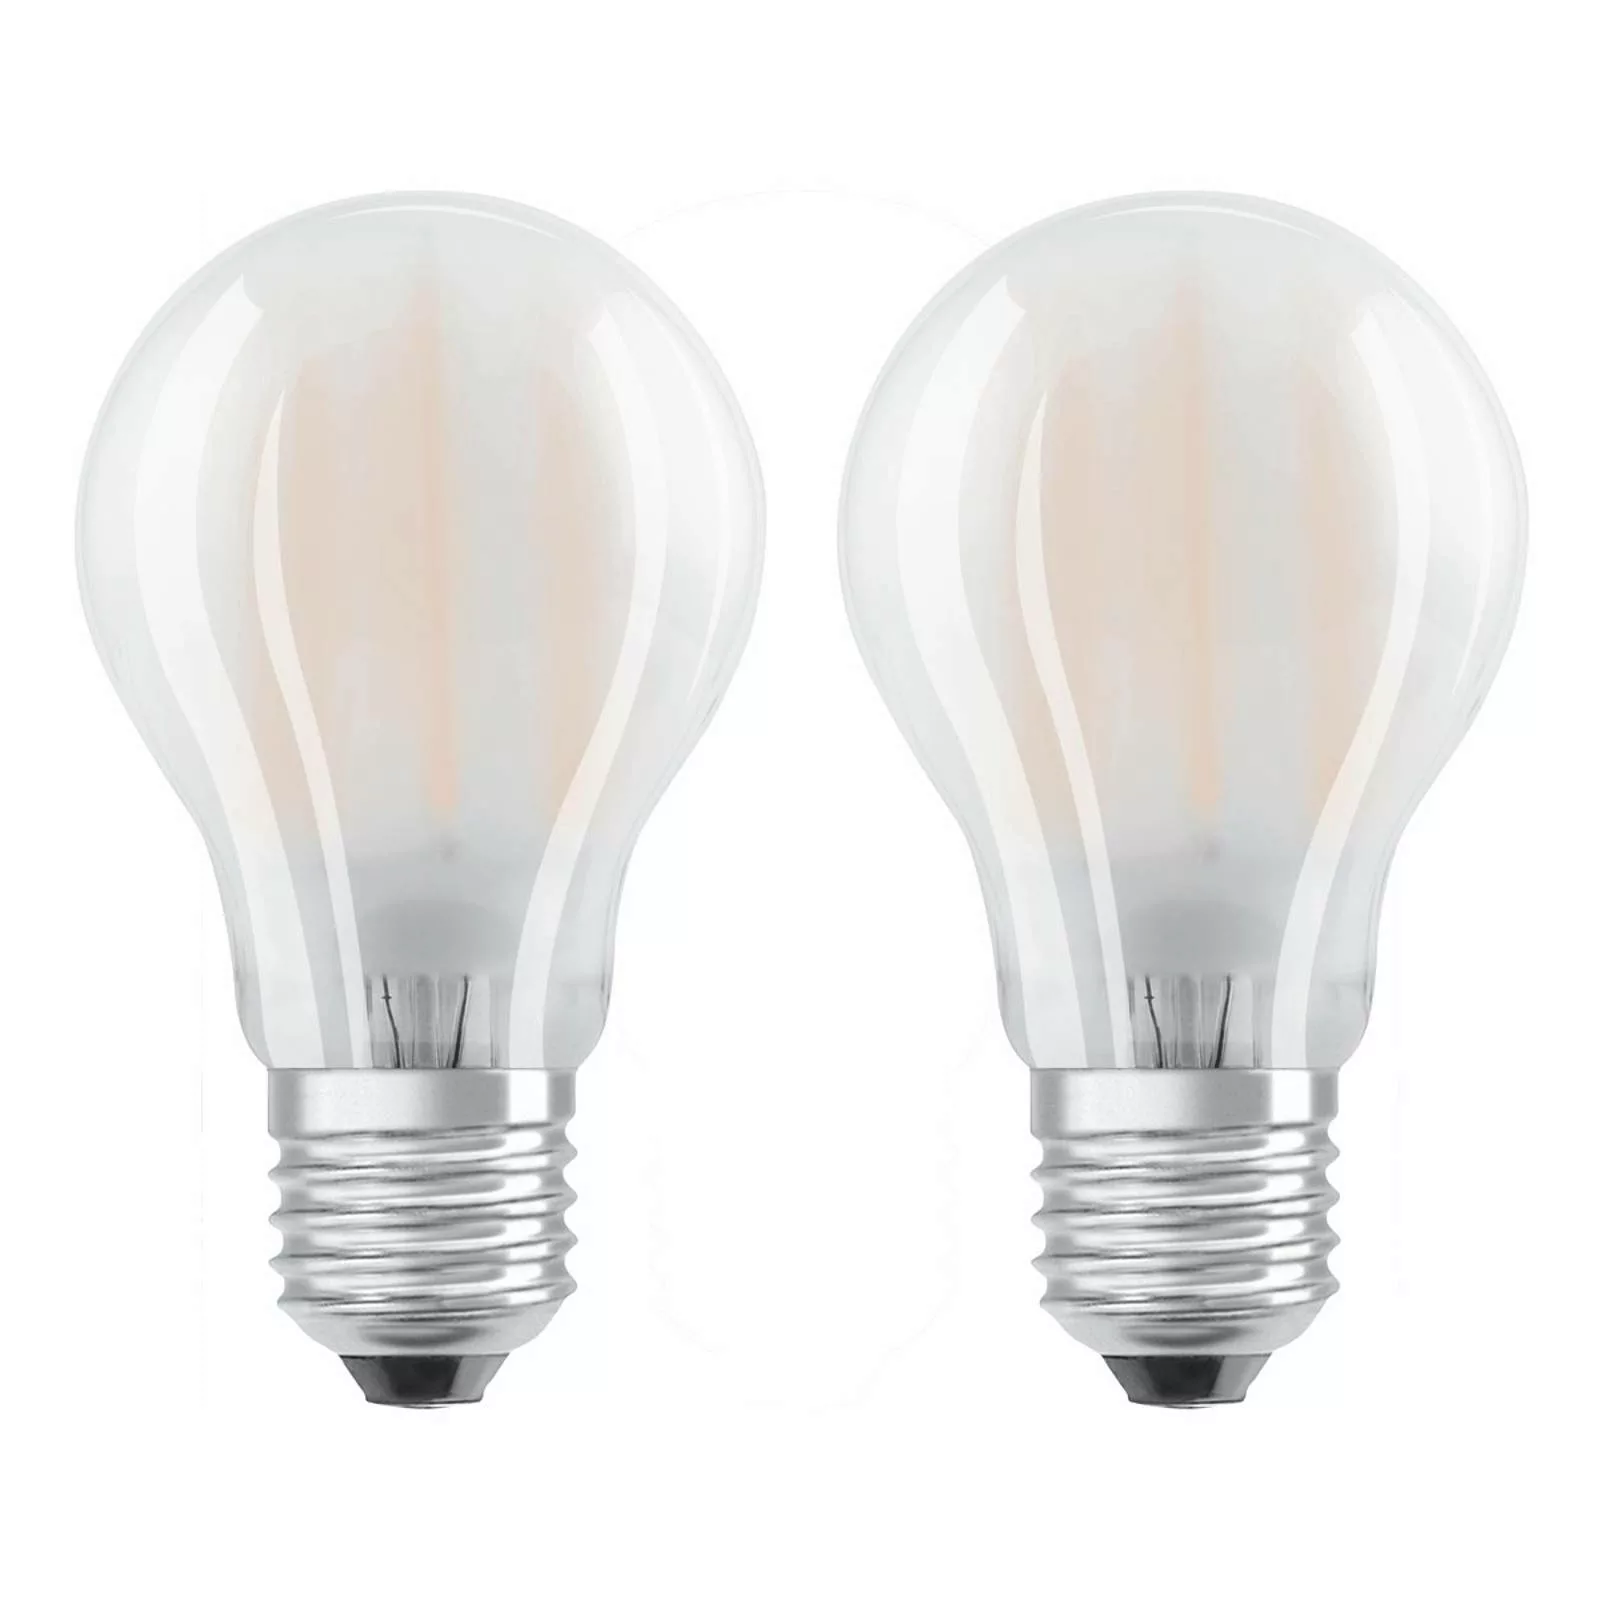 Osram LED Lampe ersetzt 40W E27 Birne - A60 in Weiß 4W 470lm 2700K 2er Pack günstig online kaufen